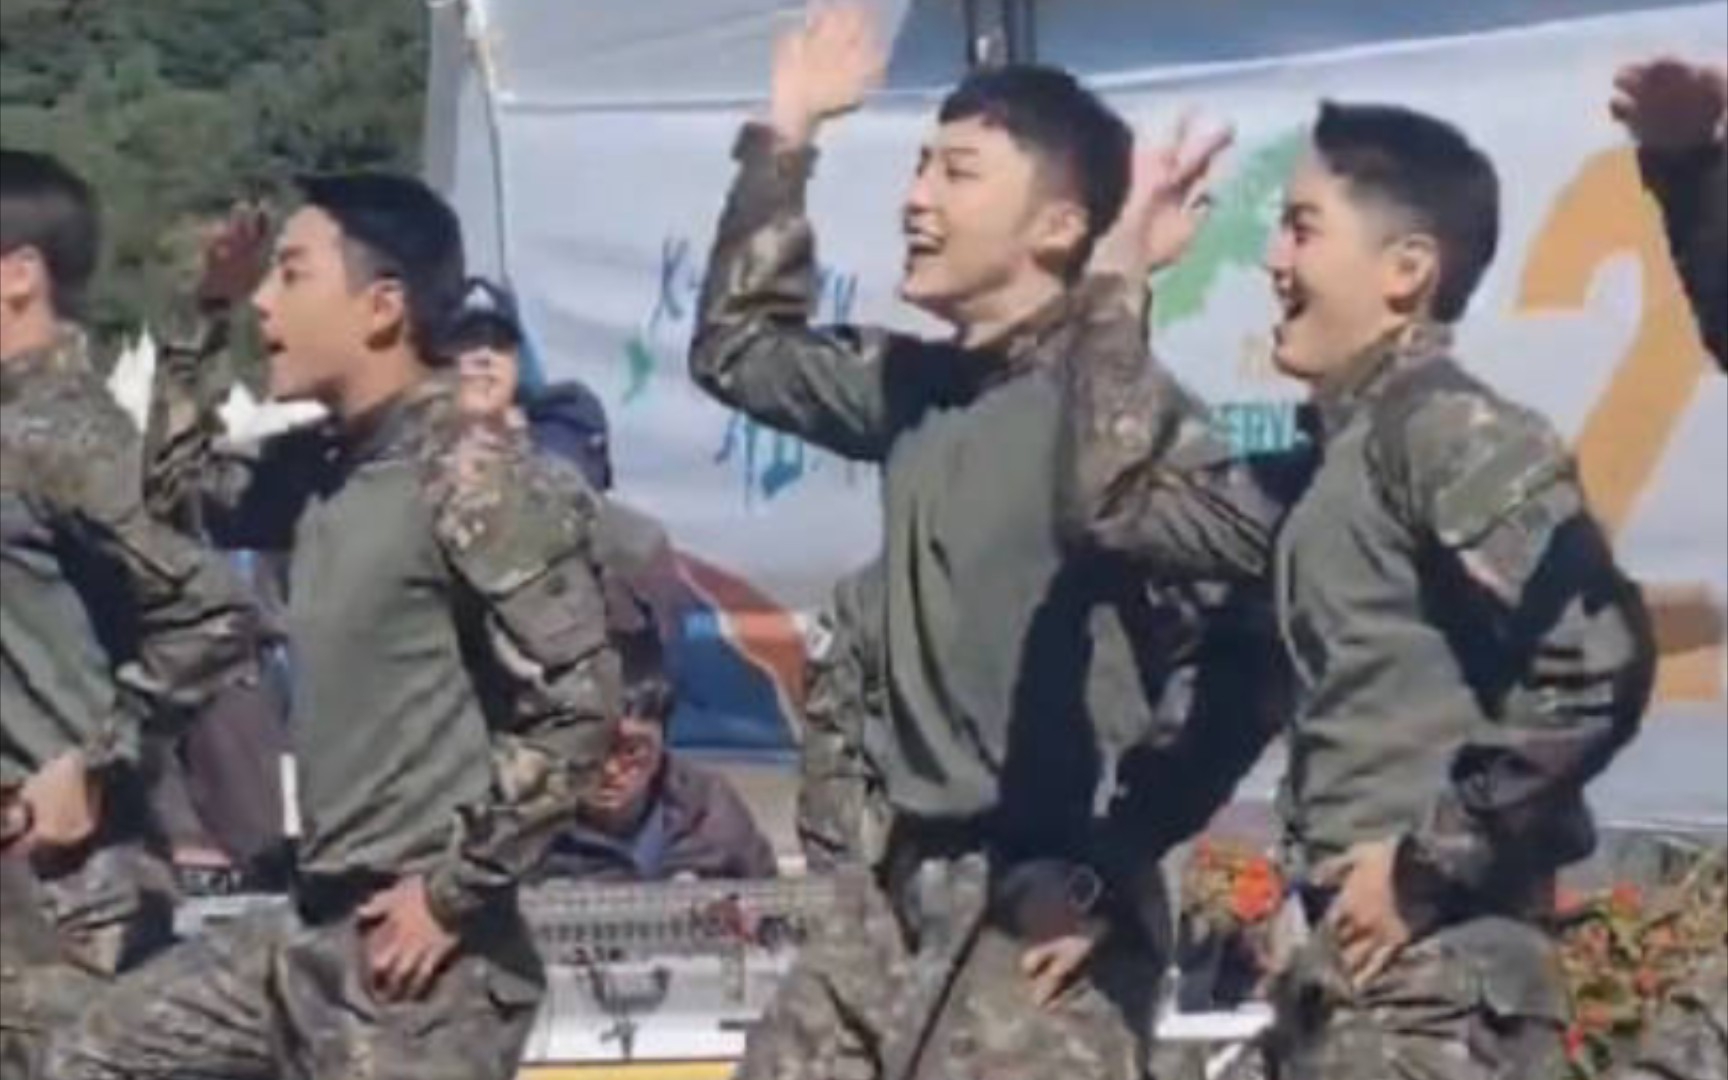 真受不了了哈哈哈... Hype Boy真成新韩国国歌了让你们入伍不是让你们去军队里扭屁的好吗！！！太帅了吧！